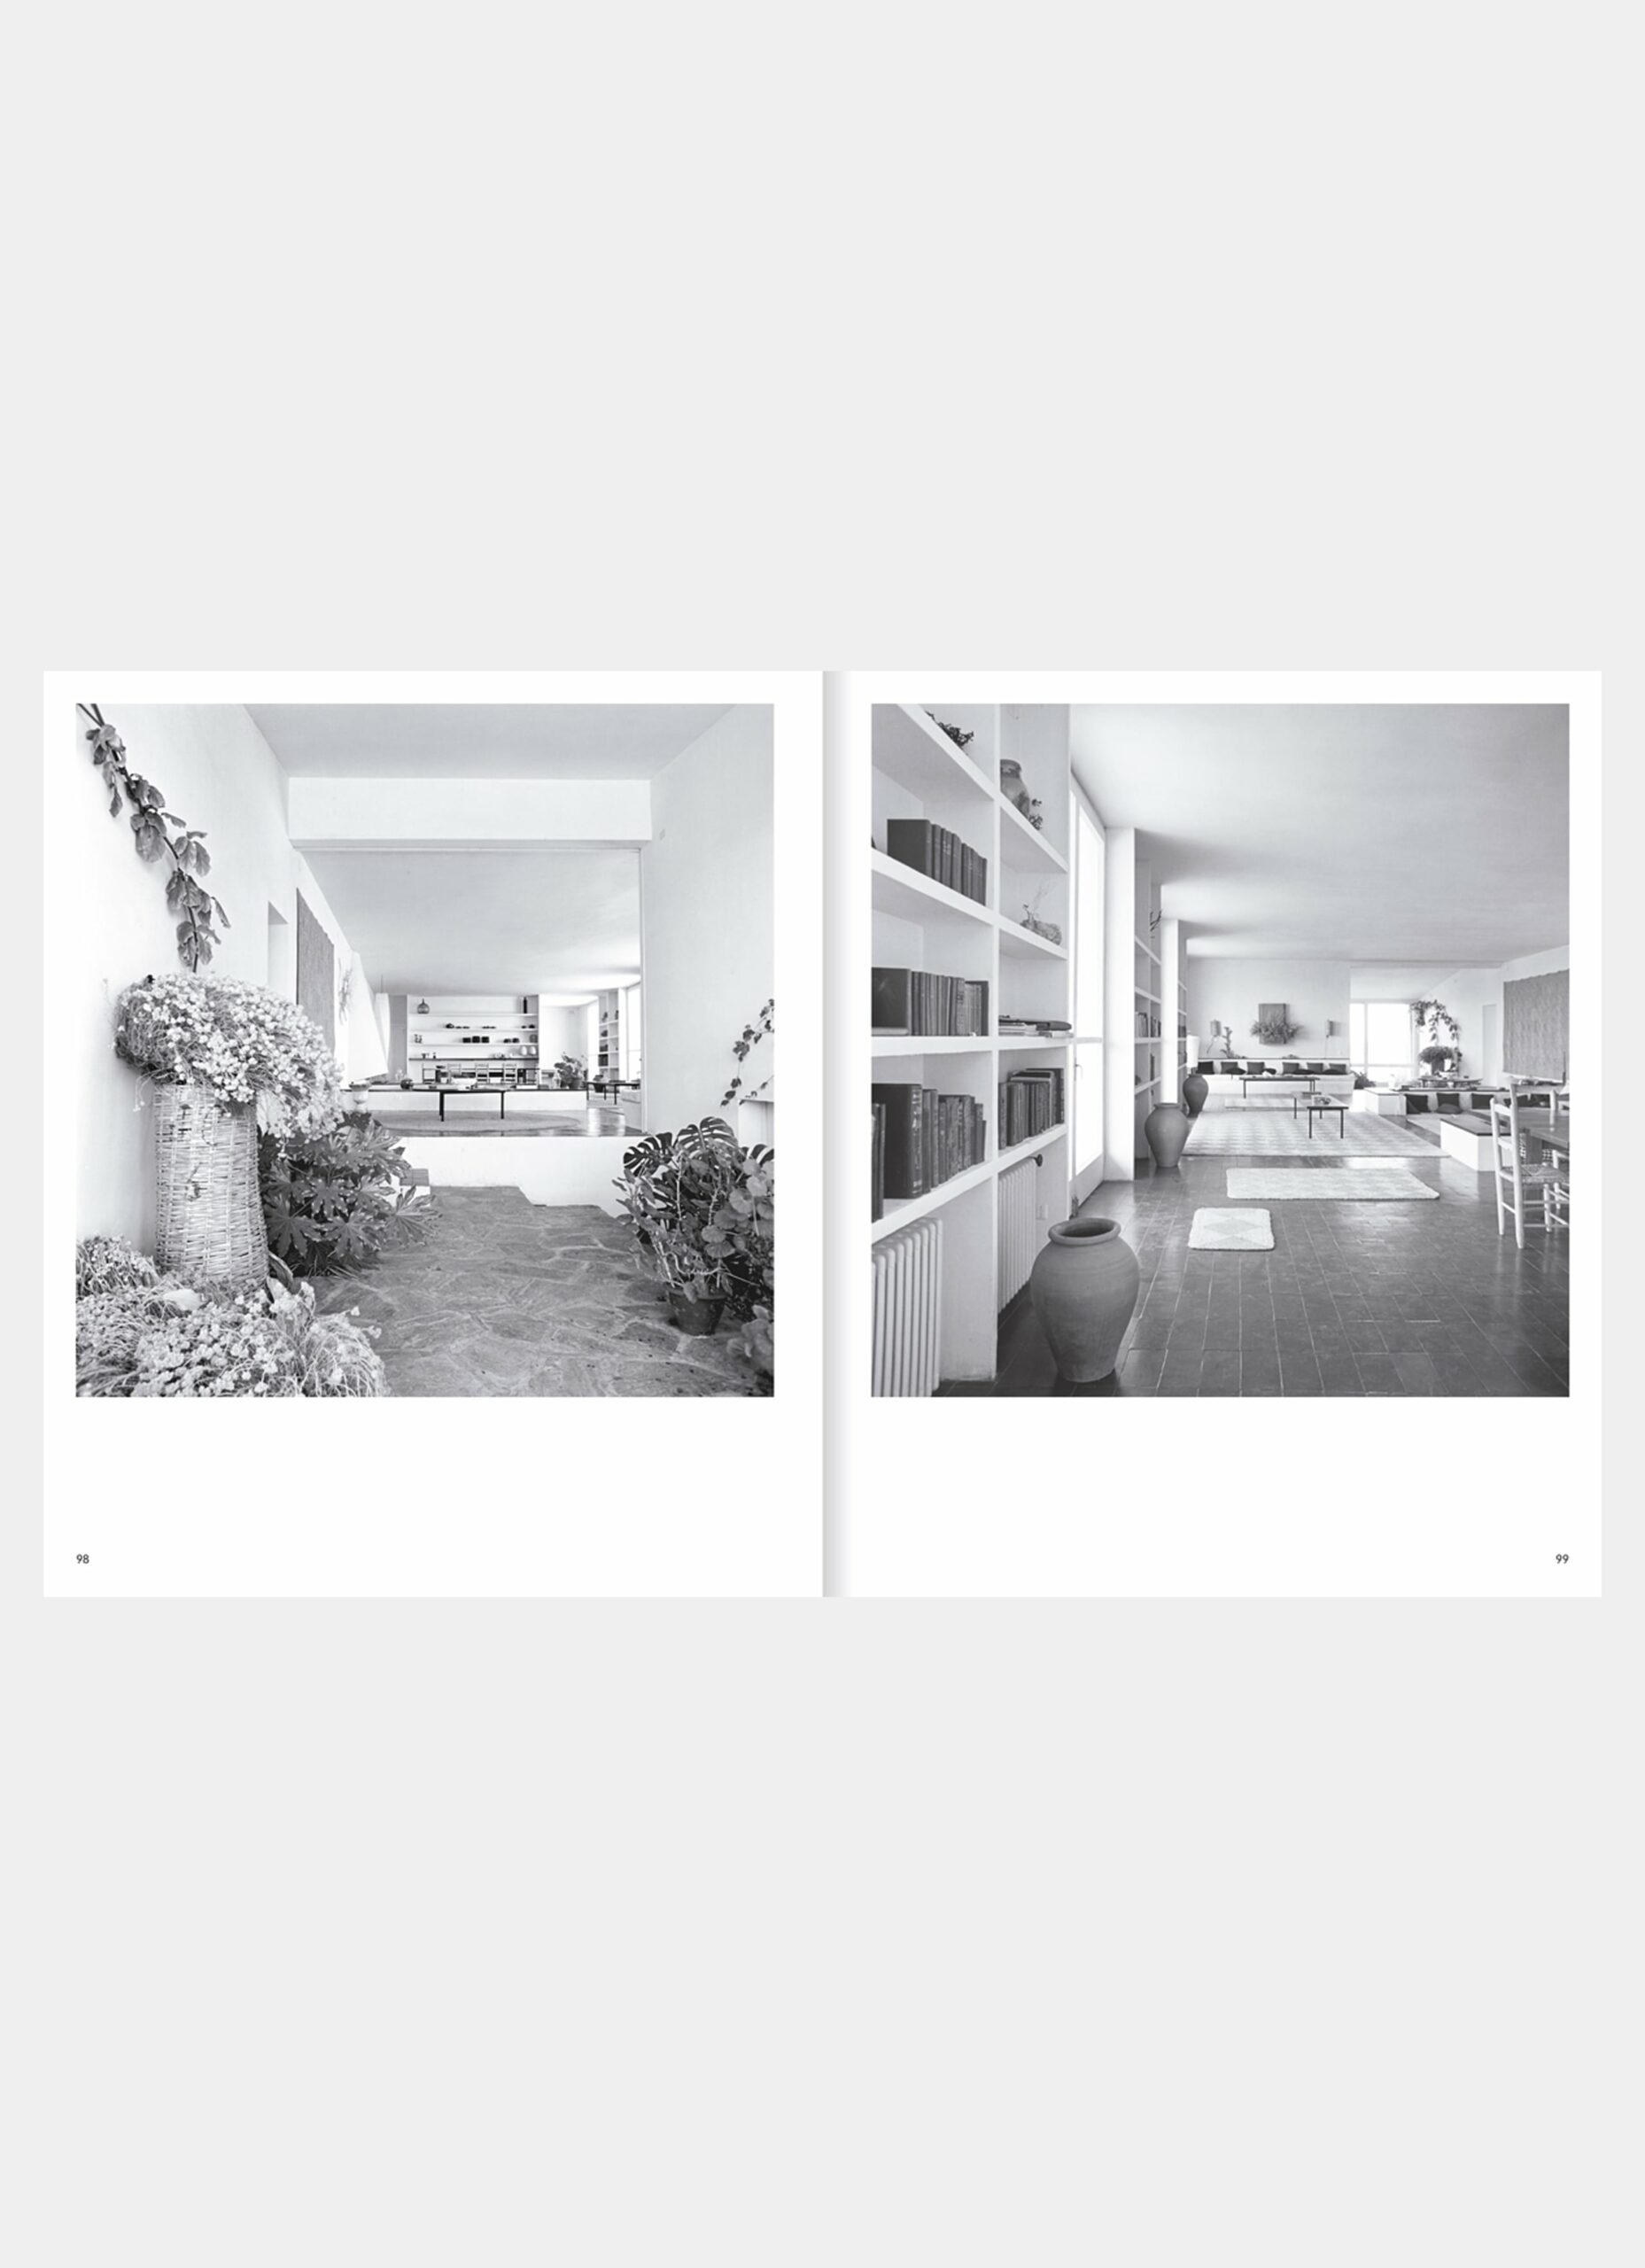 Nacho Alegre - Apartamento - The Modern Architecture of Cadaqués 1955 - 71